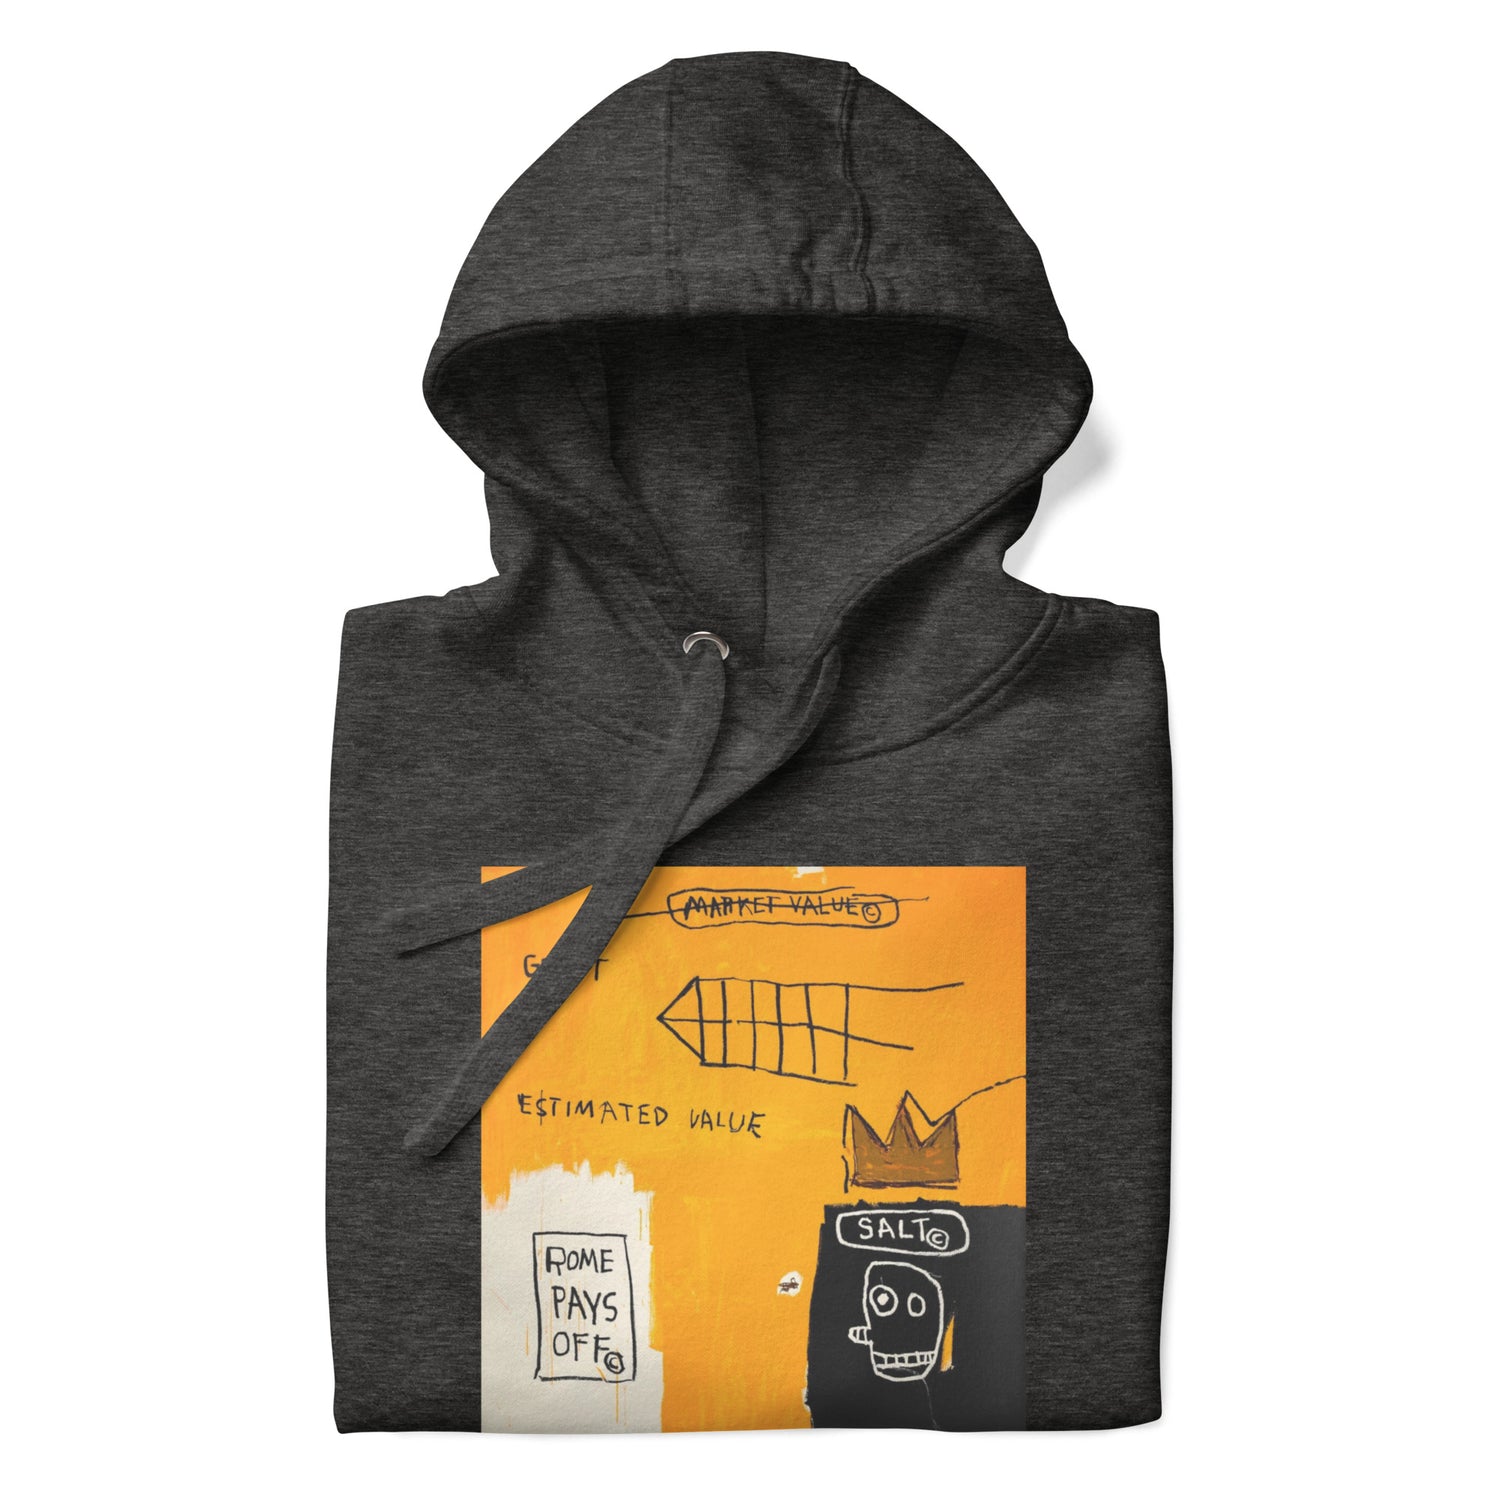 Jean-Michel Basquiat "Rome Pays Off" Artwork Printed Premium Streetwear Sweatshirt Hoodie Charcoal Grey